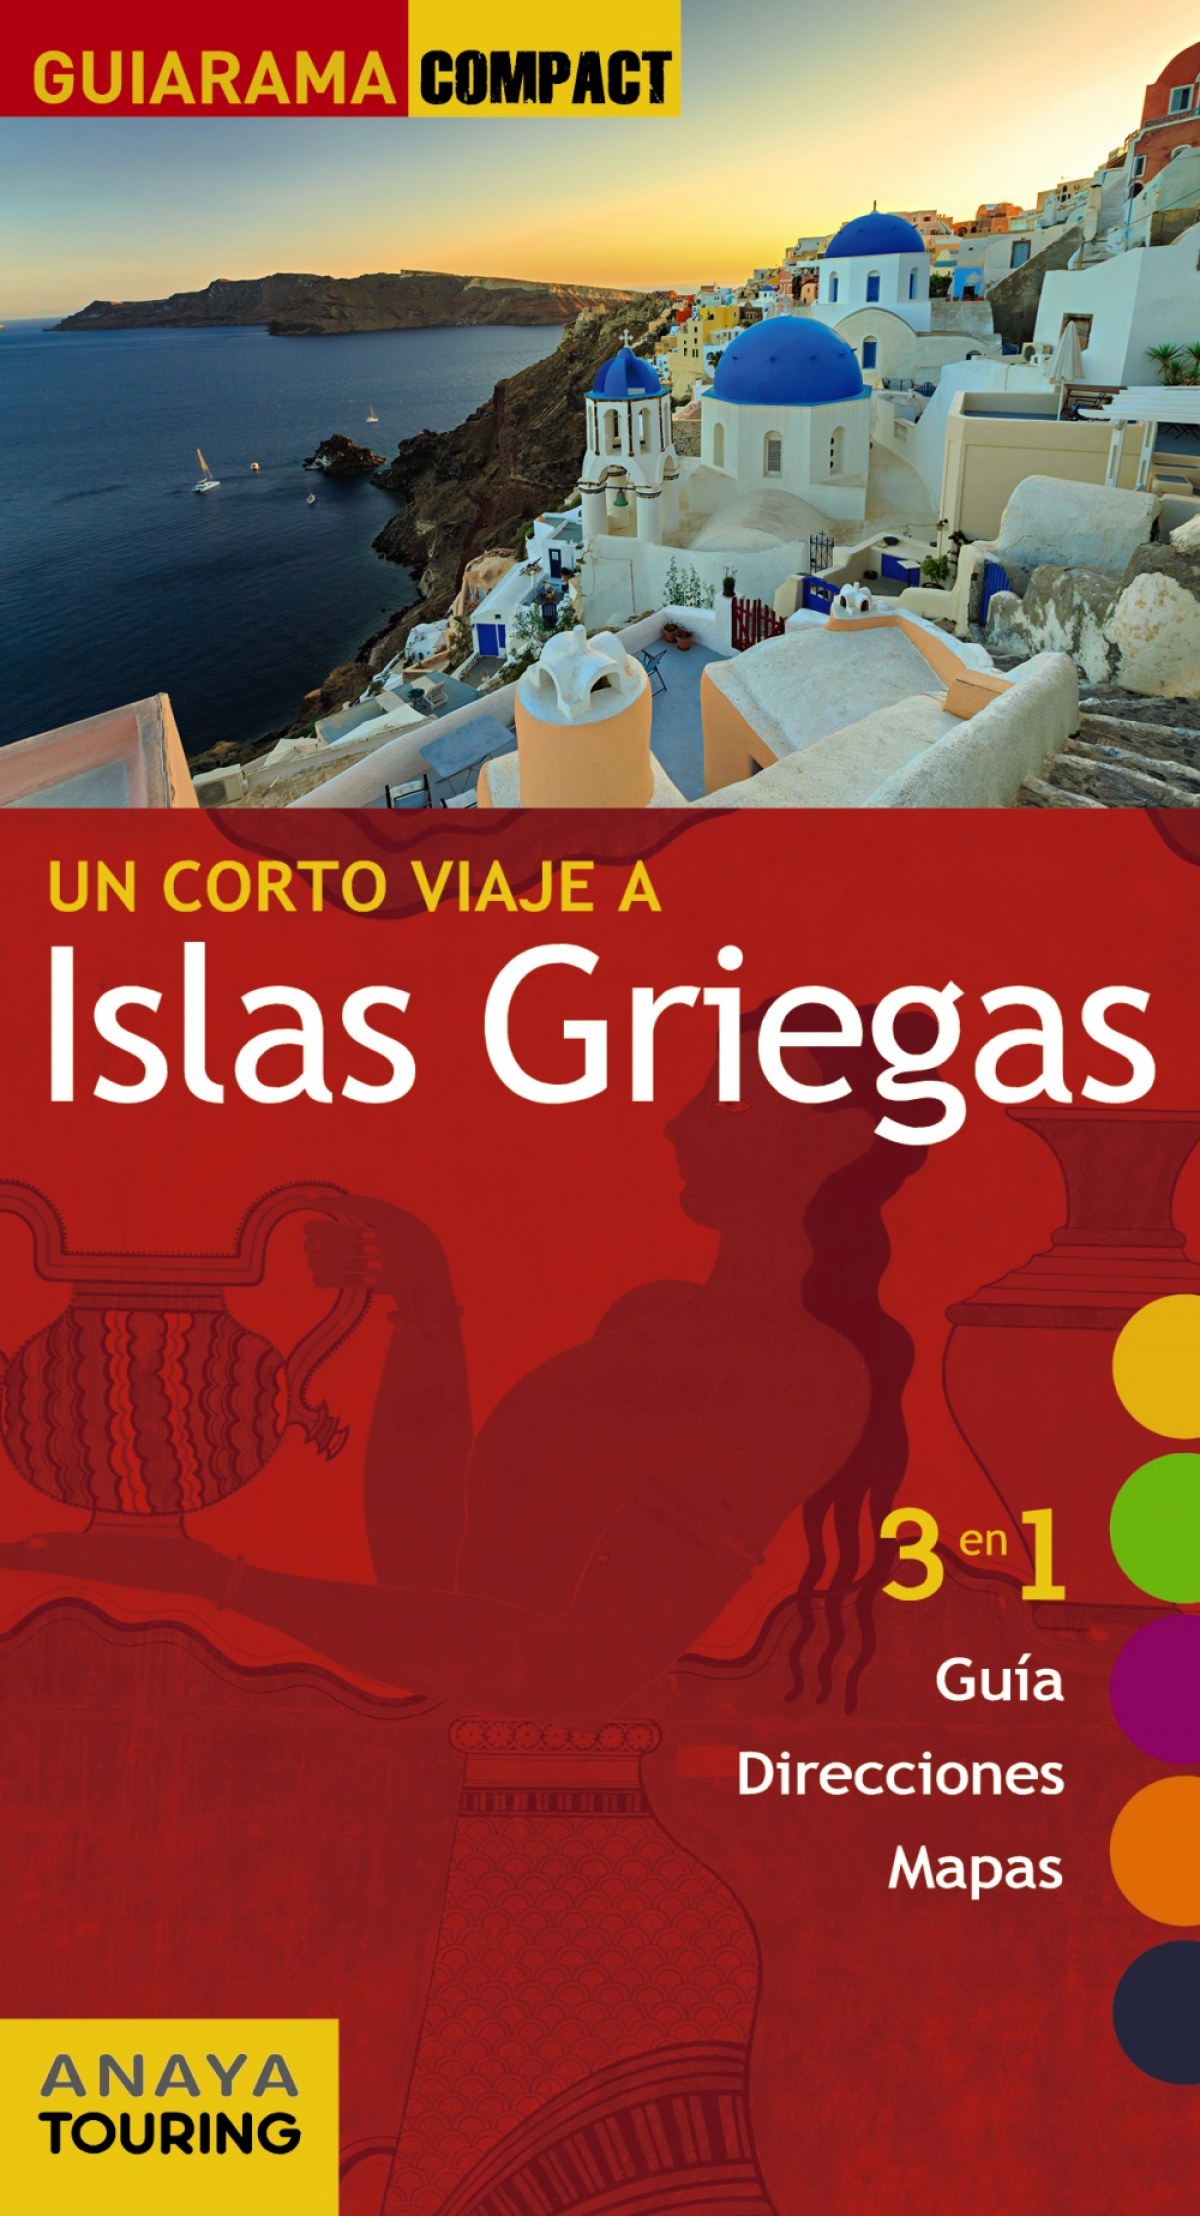 Islas Griegas 2016 - Ron, Ana